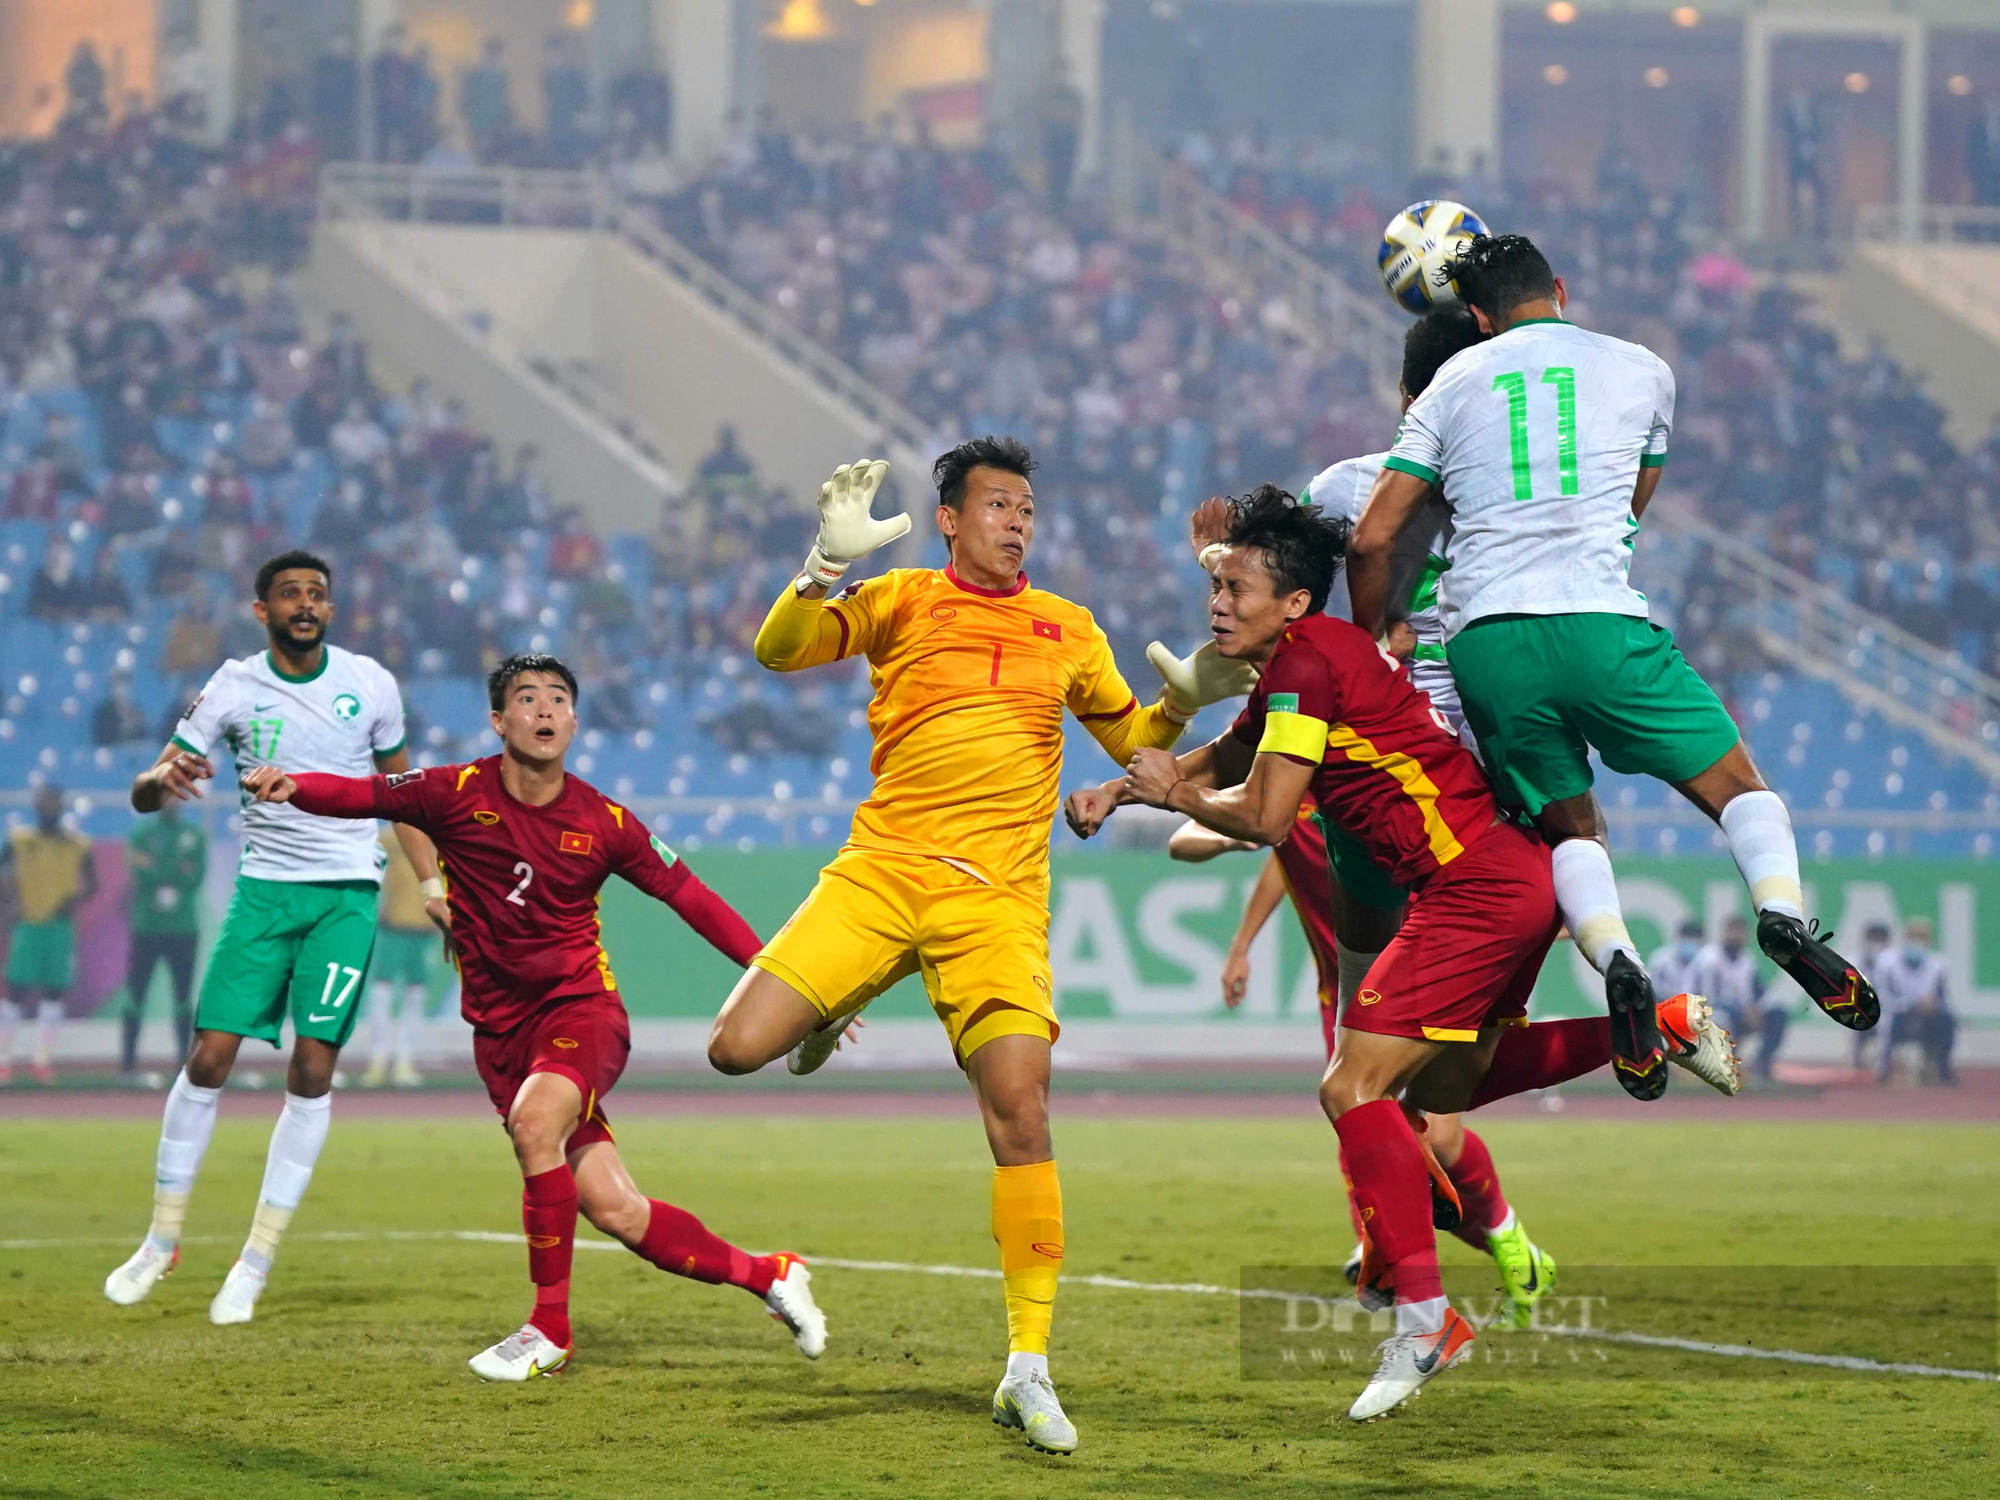 Chùm ảnh tuyển Việt Nam thi đấu lăn xả trước đội tuyển Ả Rập Xê Út - Ảnh 7.